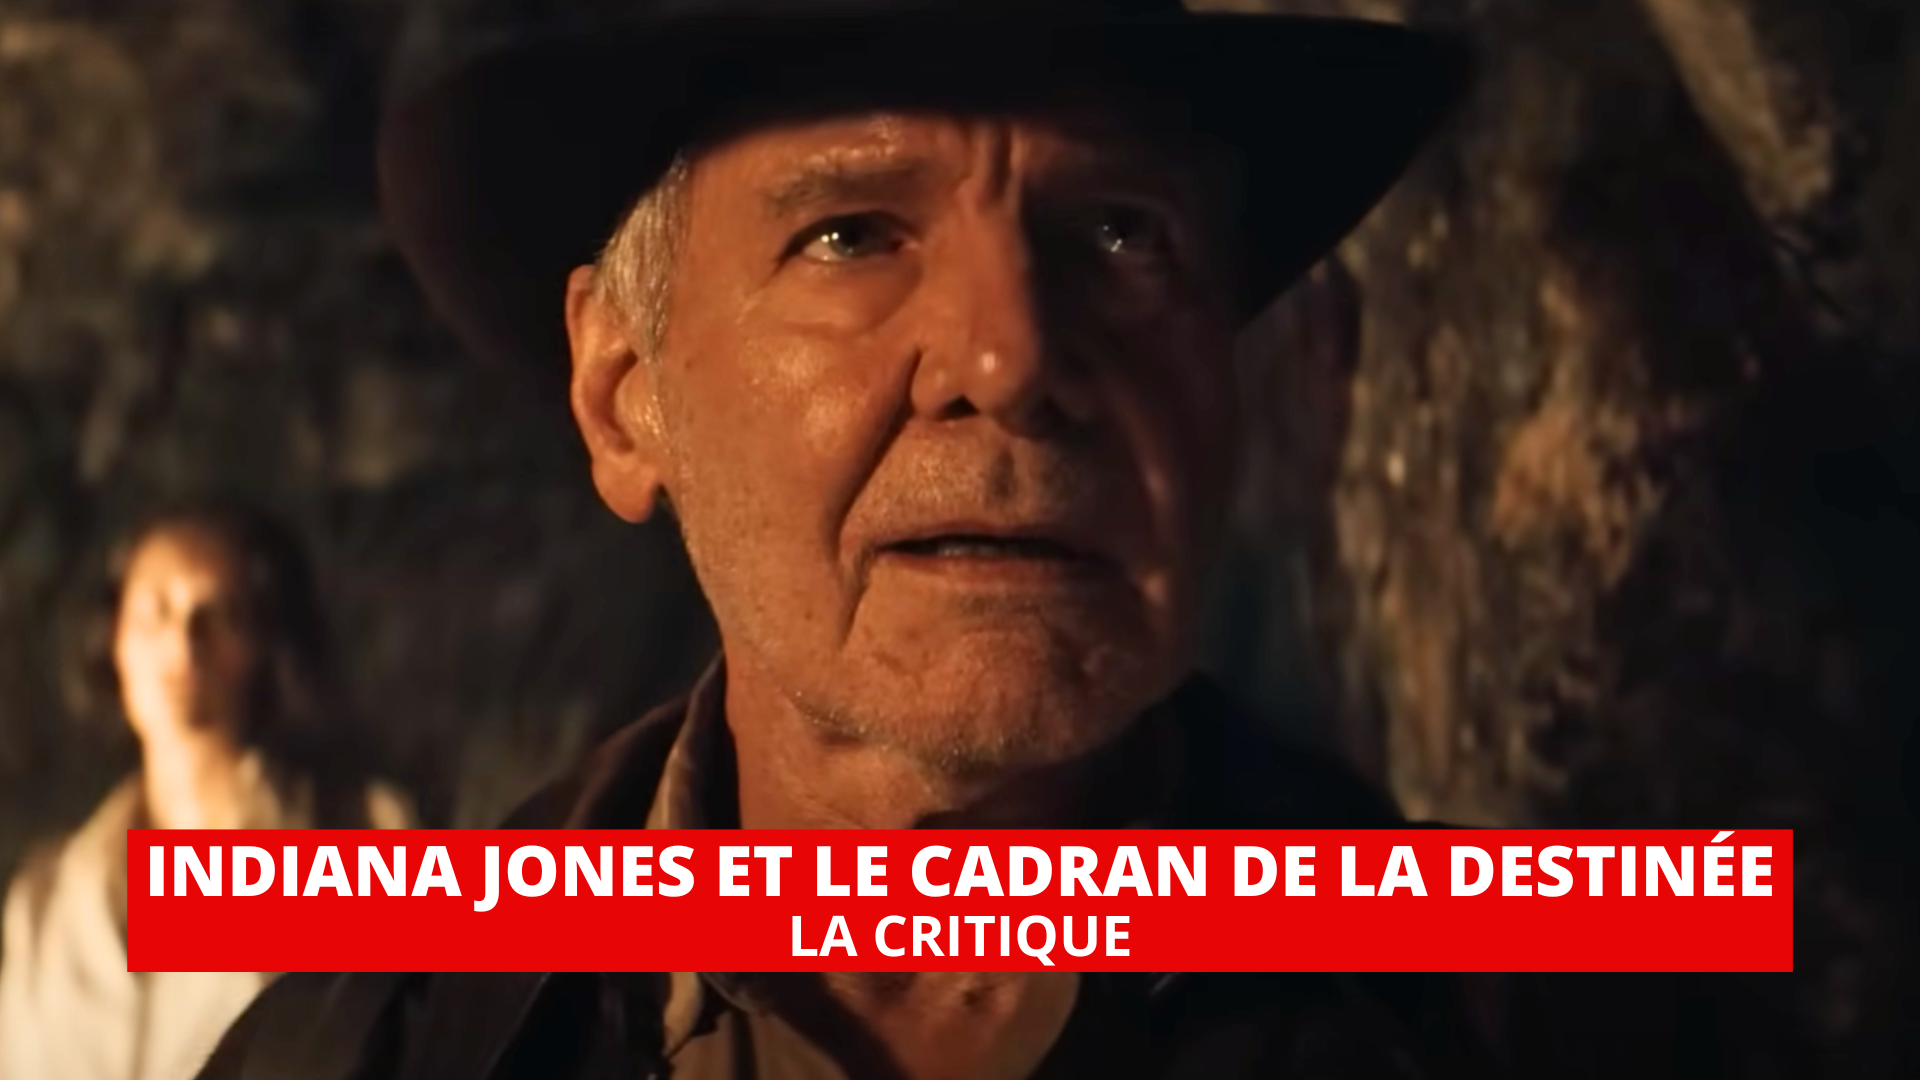 Indiana Jones et le Cadran de la destinée : Harrison Ford réussit avec panache ses adieux